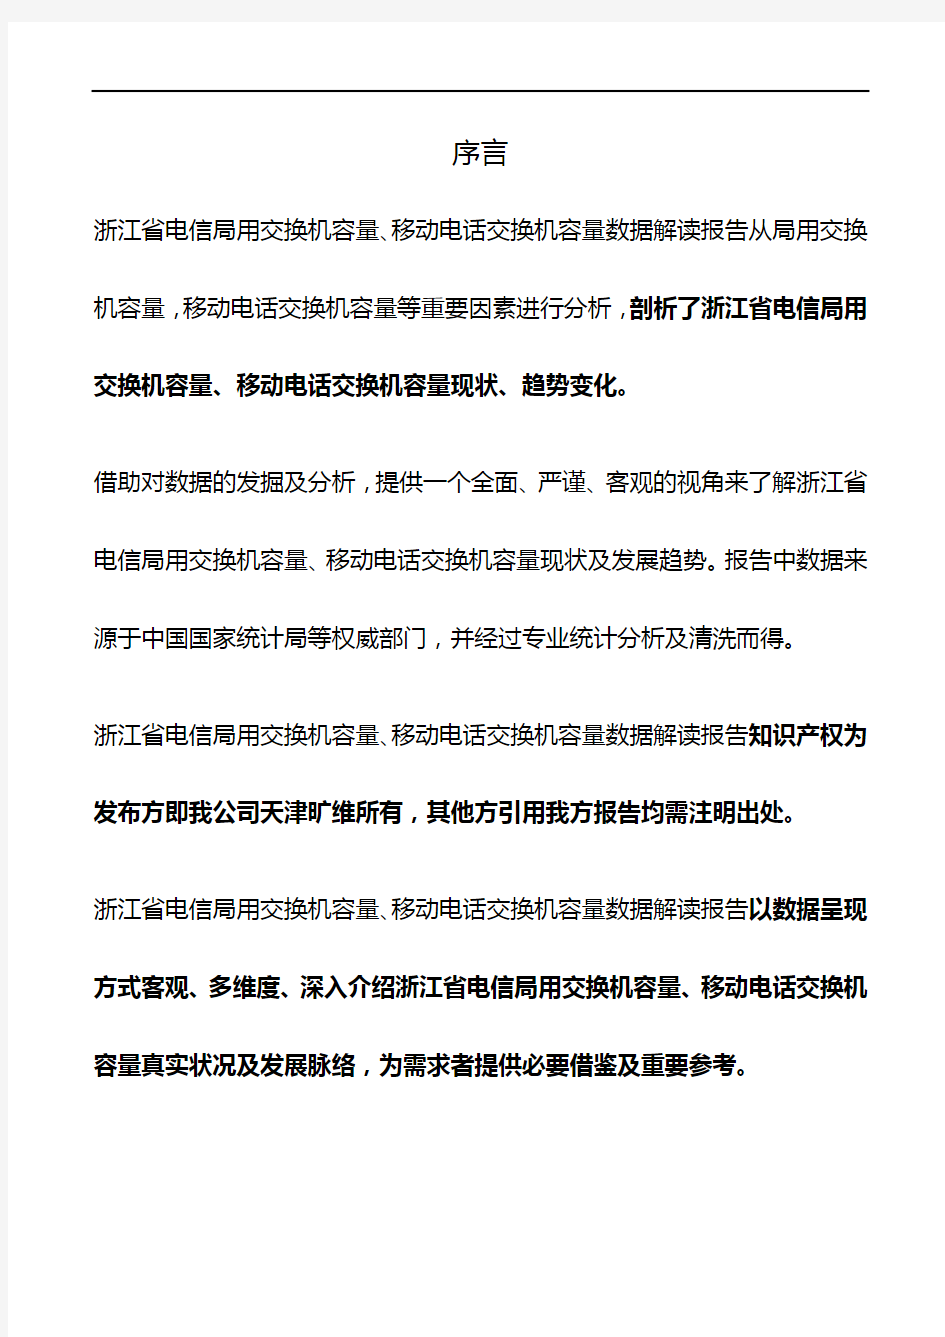 浙江省电信局用交换机容量、移动电话交换机容量3年数据解读报告2019版